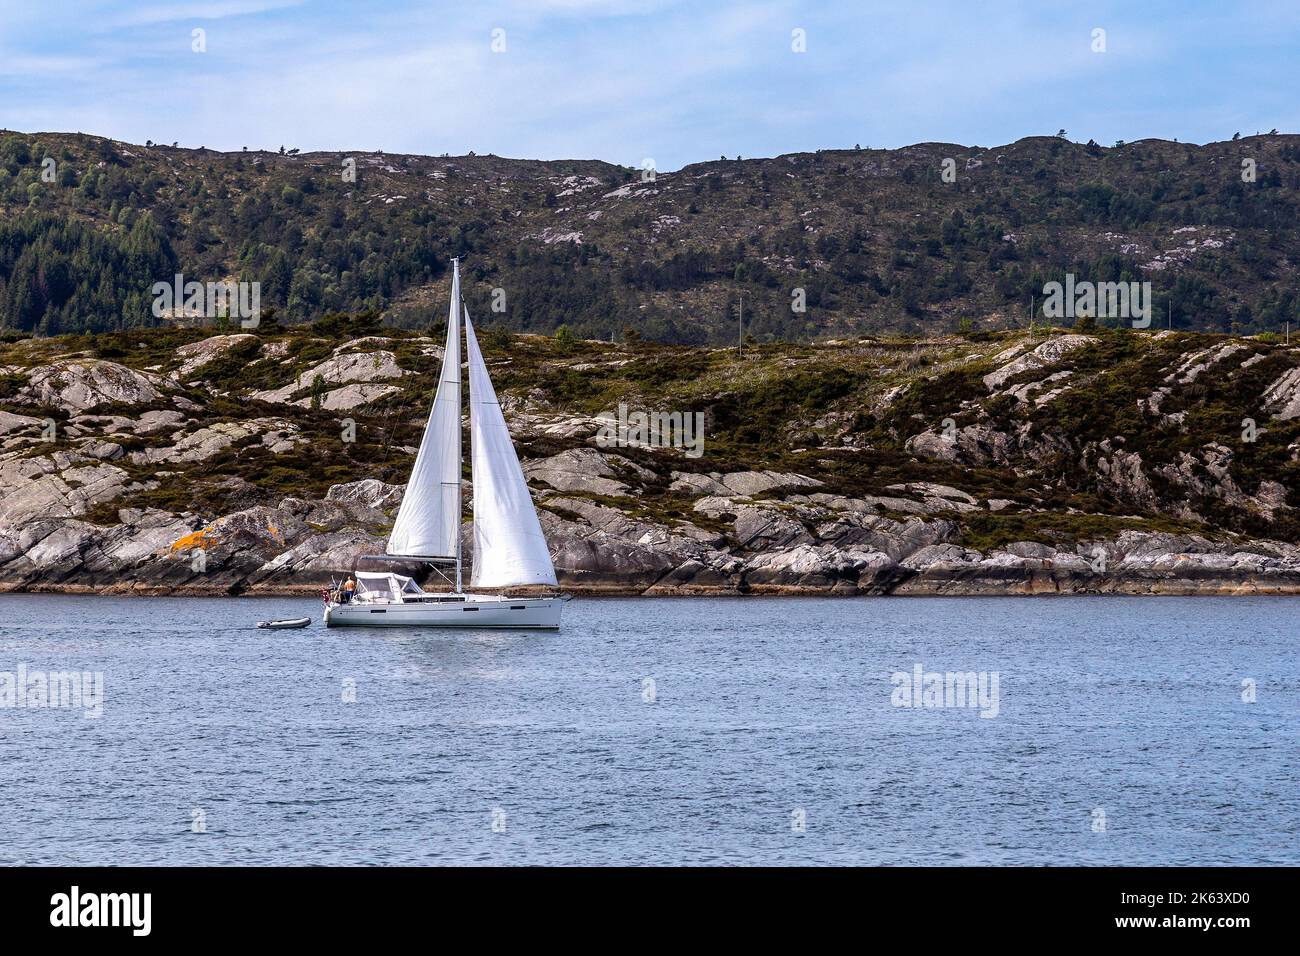 Ein Segelboot des Typs Beneteau Oceanis 41, das südlich von Bergen an der Westküste Norwegens segelt Stockfoto